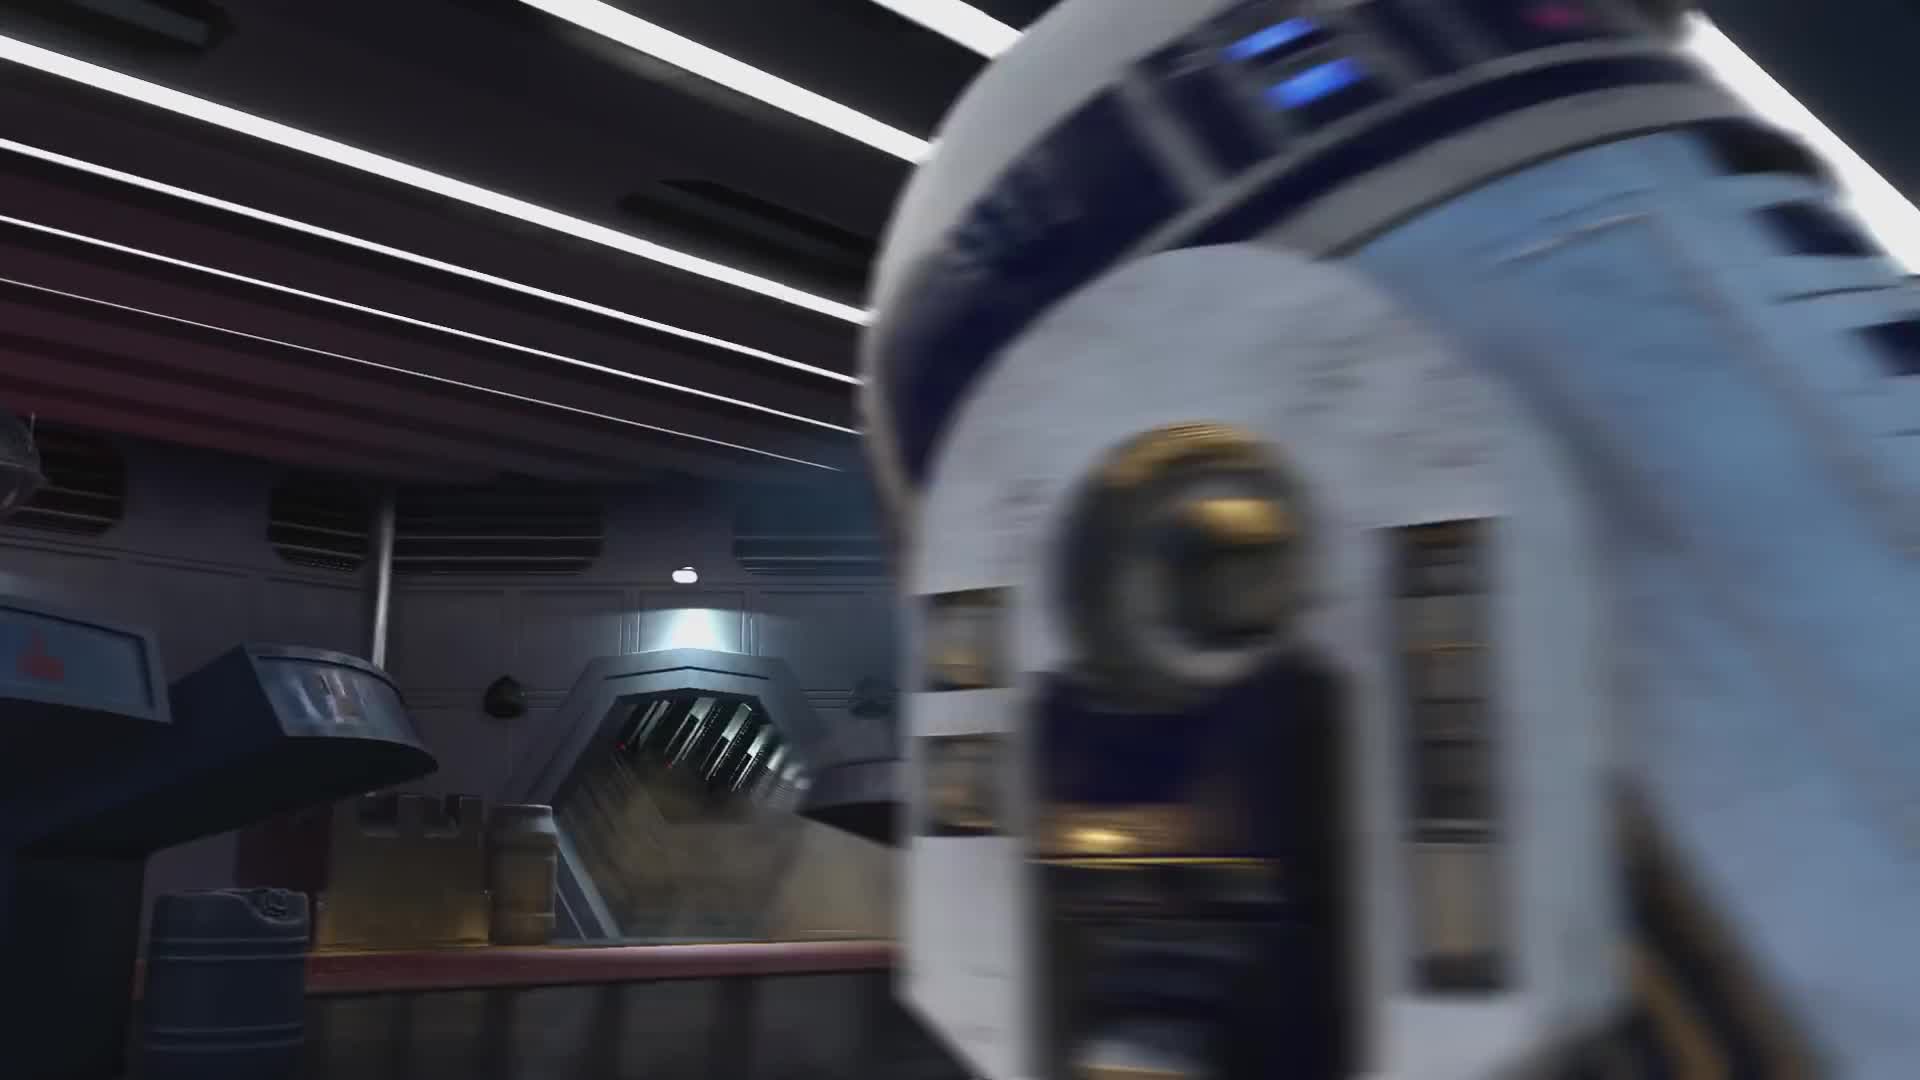 Star Wars Battlefront: Ultimate Edition - Trailer